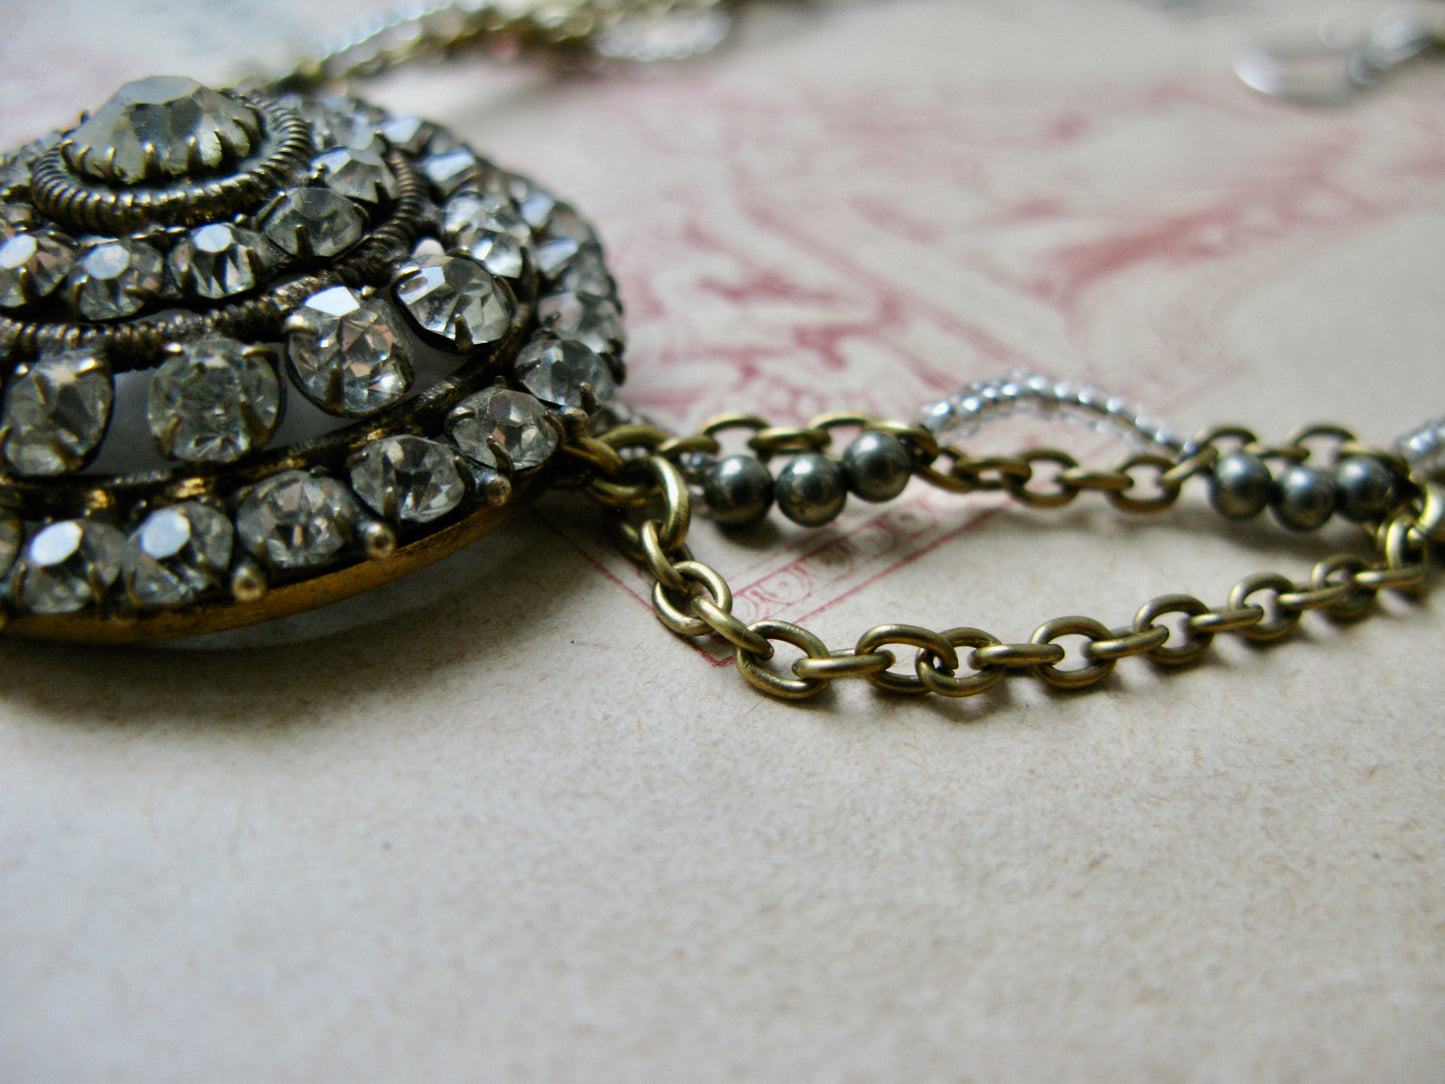 Tiara necklace